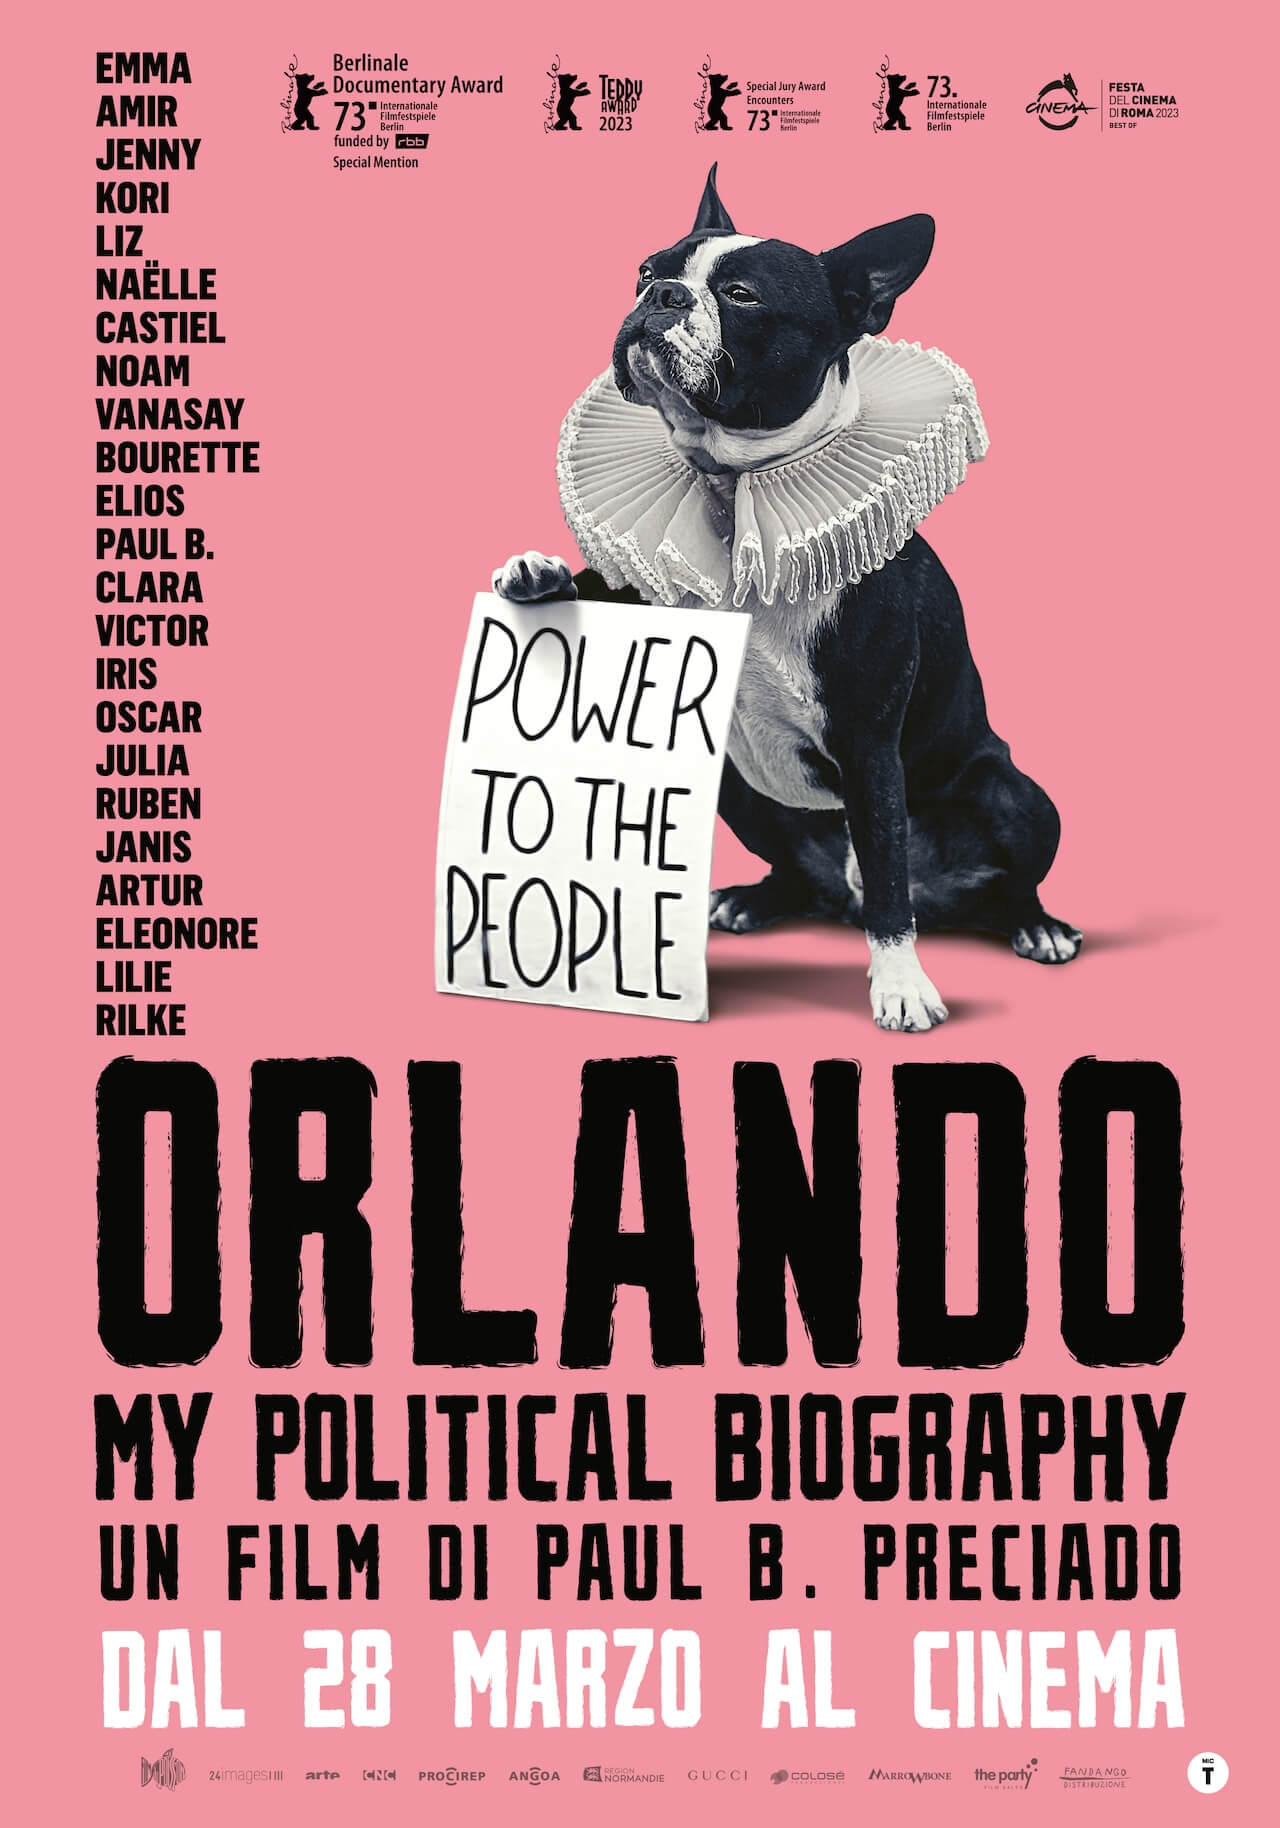 "Orlando, my biographie politique", il manifesto trans di Paul B. Preciado arriva nei cinema d'Italia - ORLANDO poster data - Gay.it